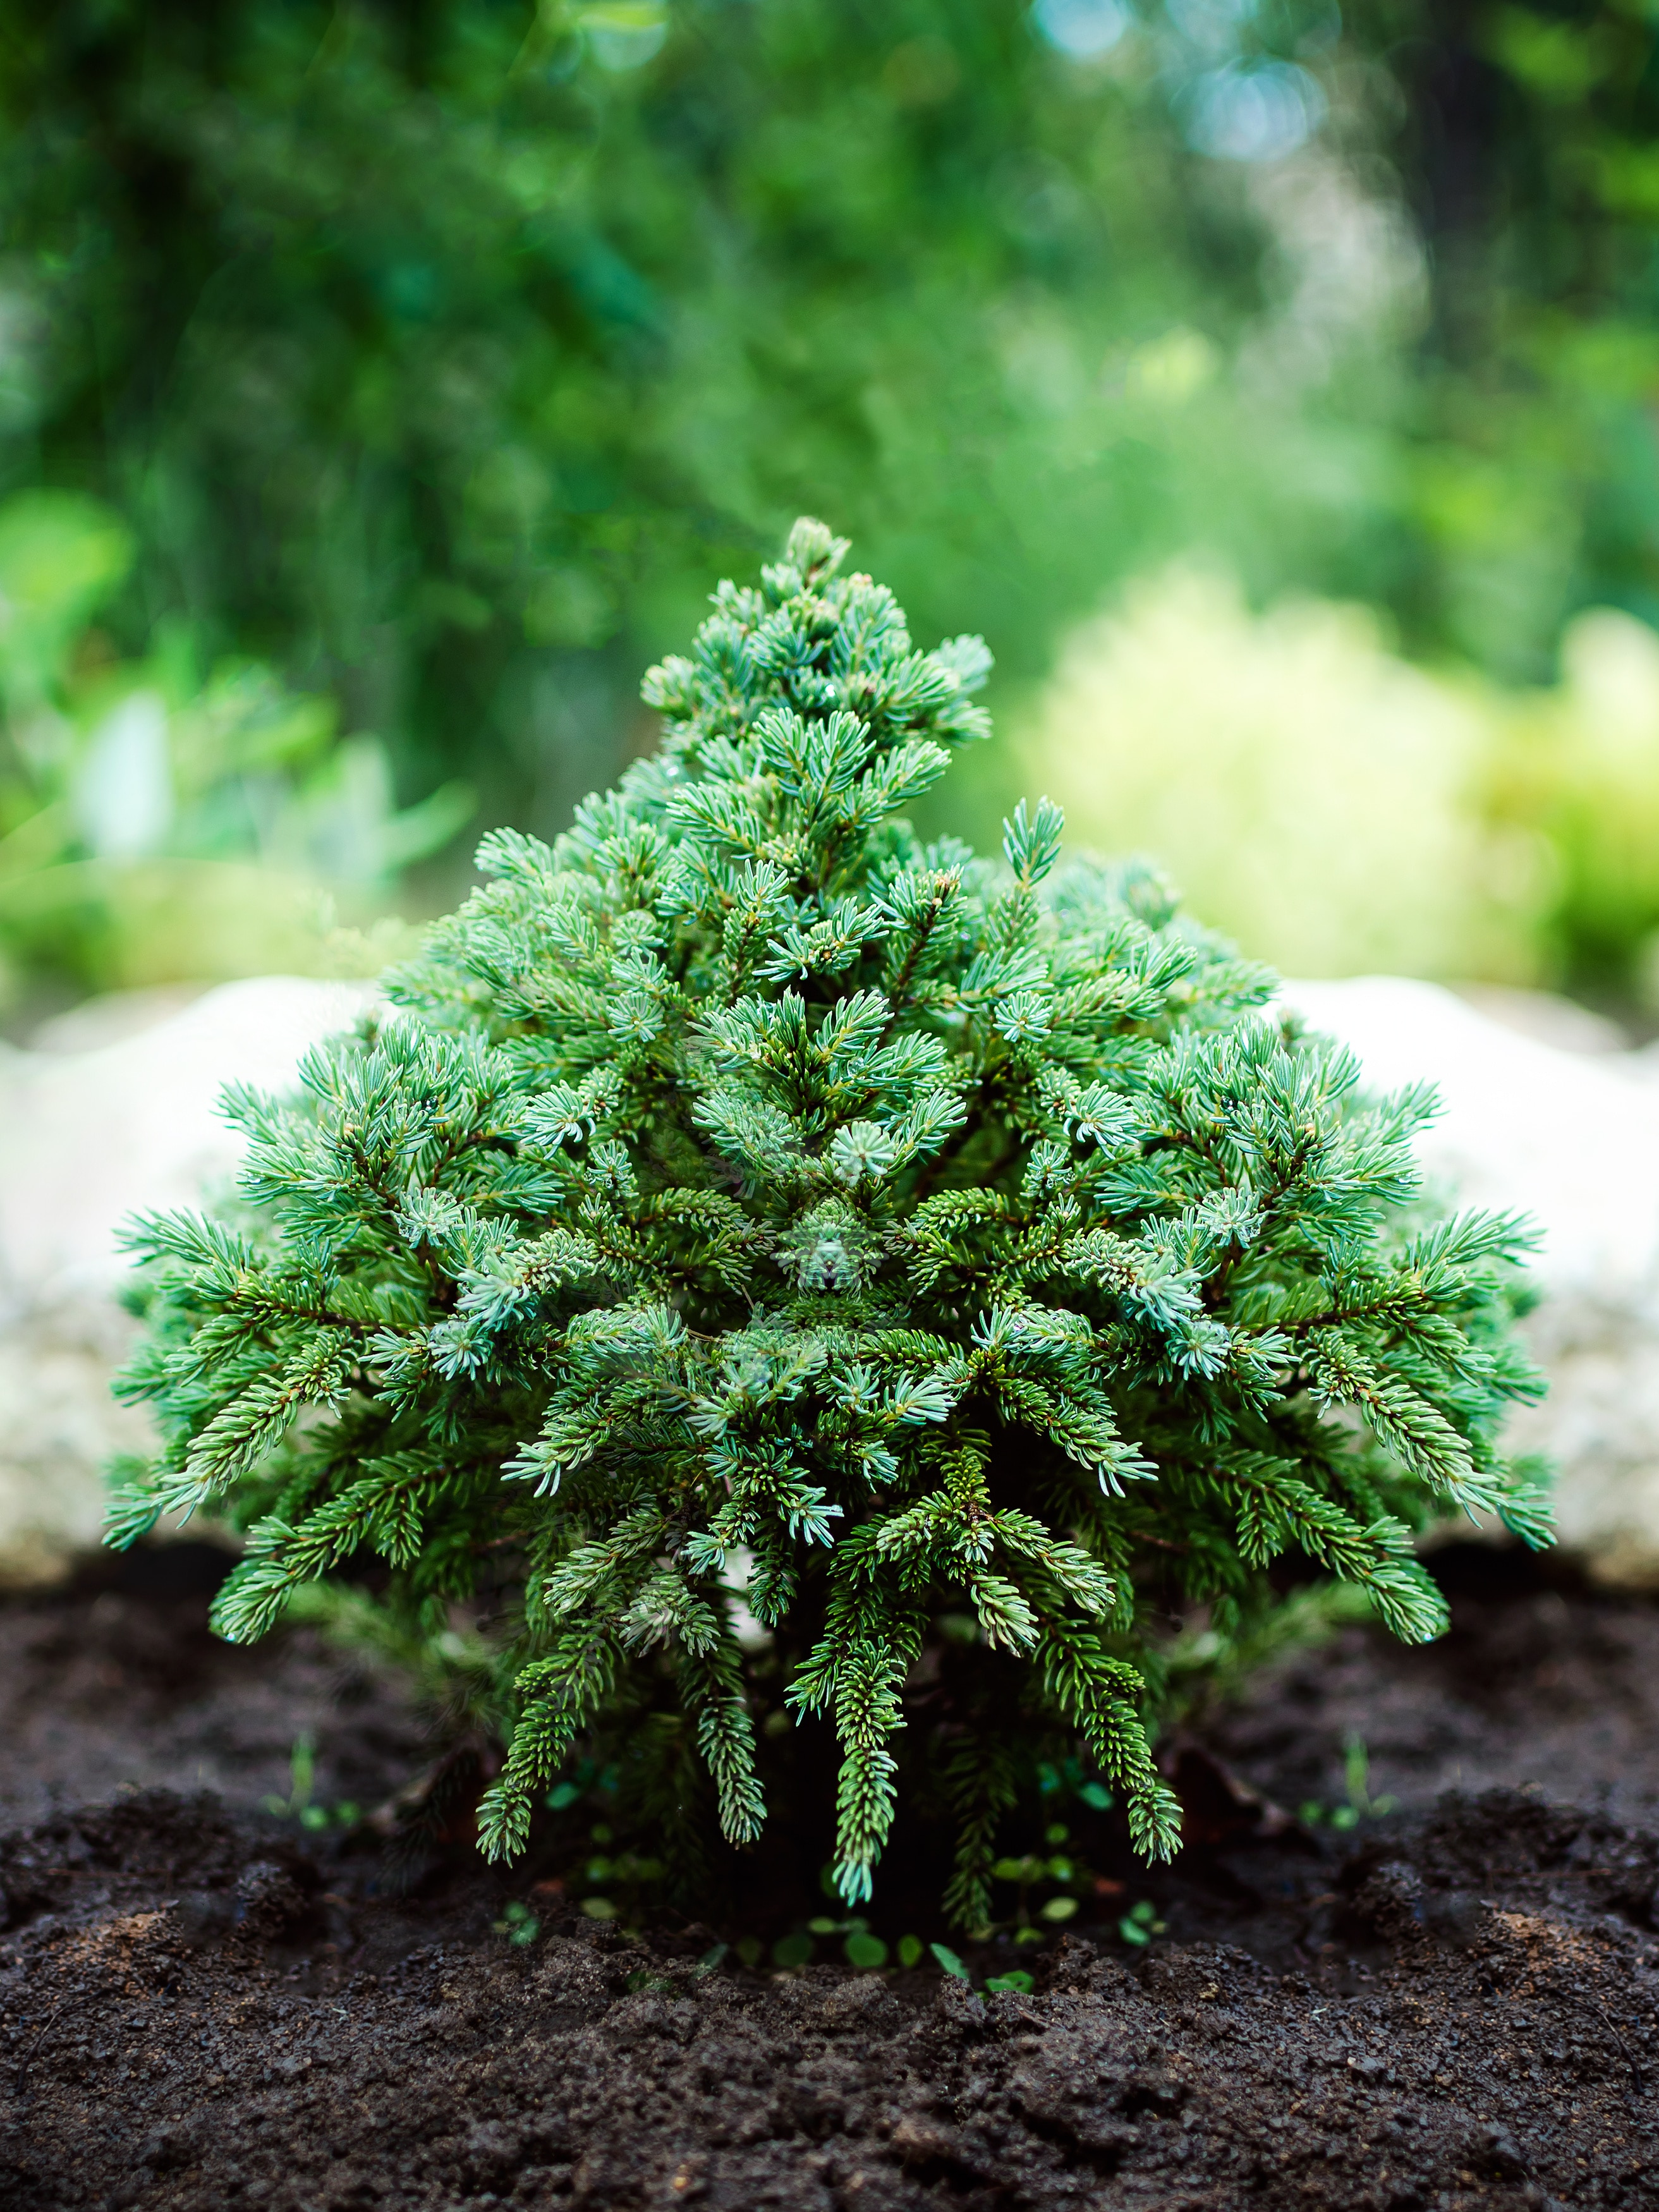 decorative dwarf pine grows in the garden.